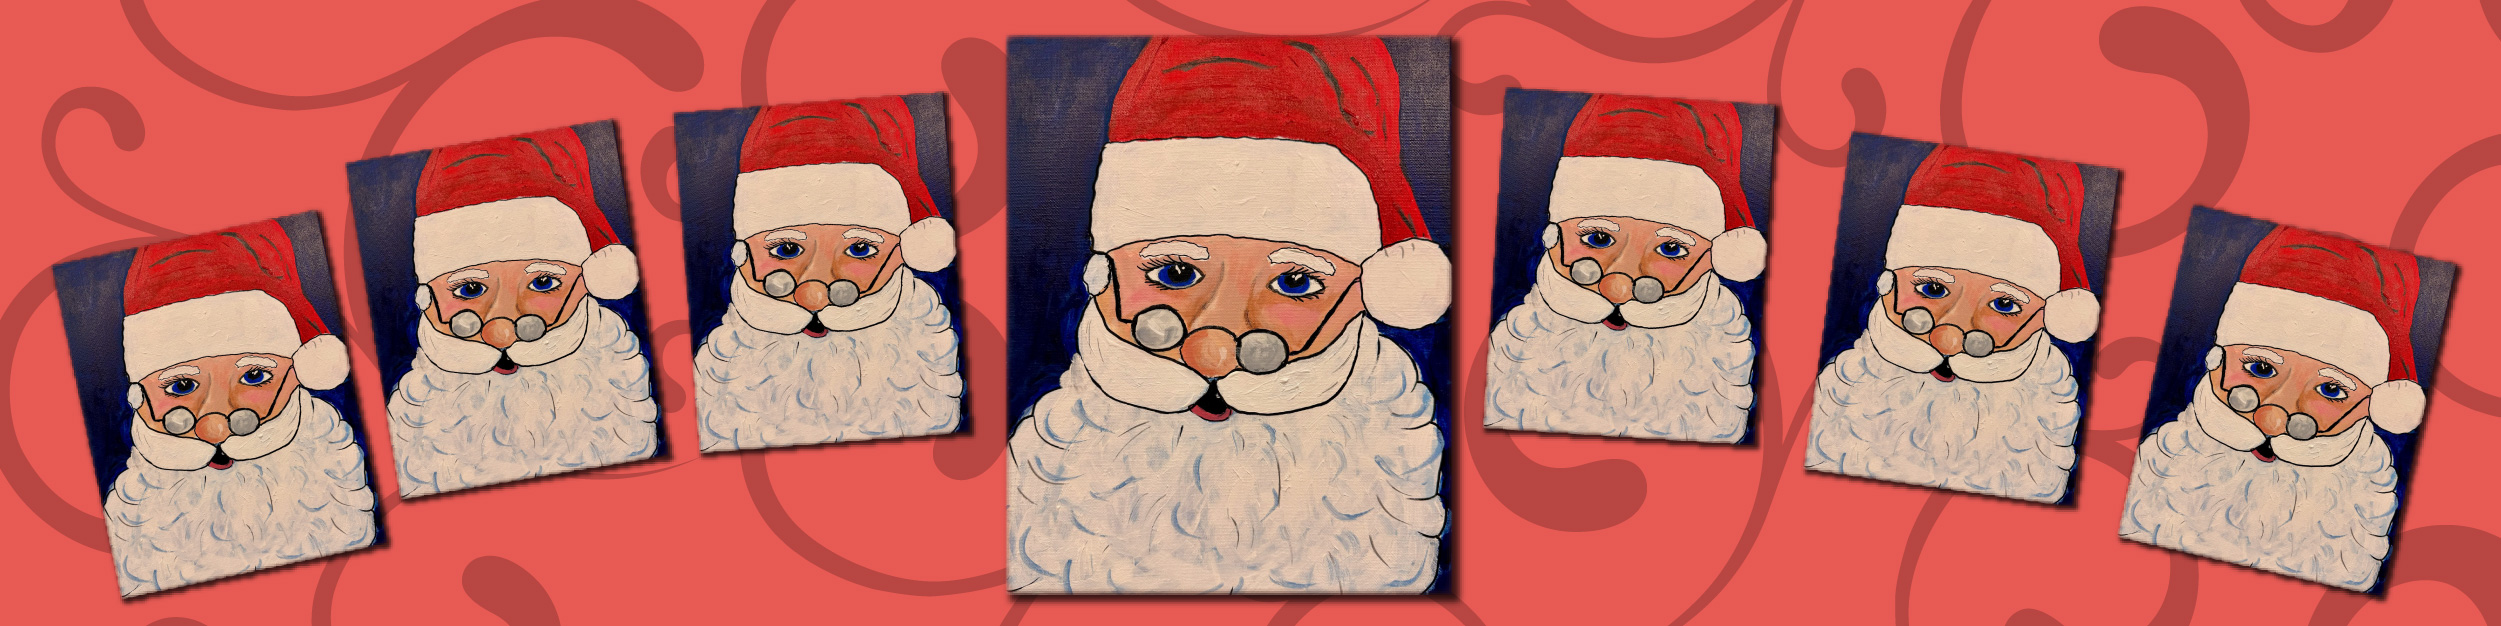 November Paints & Pastries Santa Claus